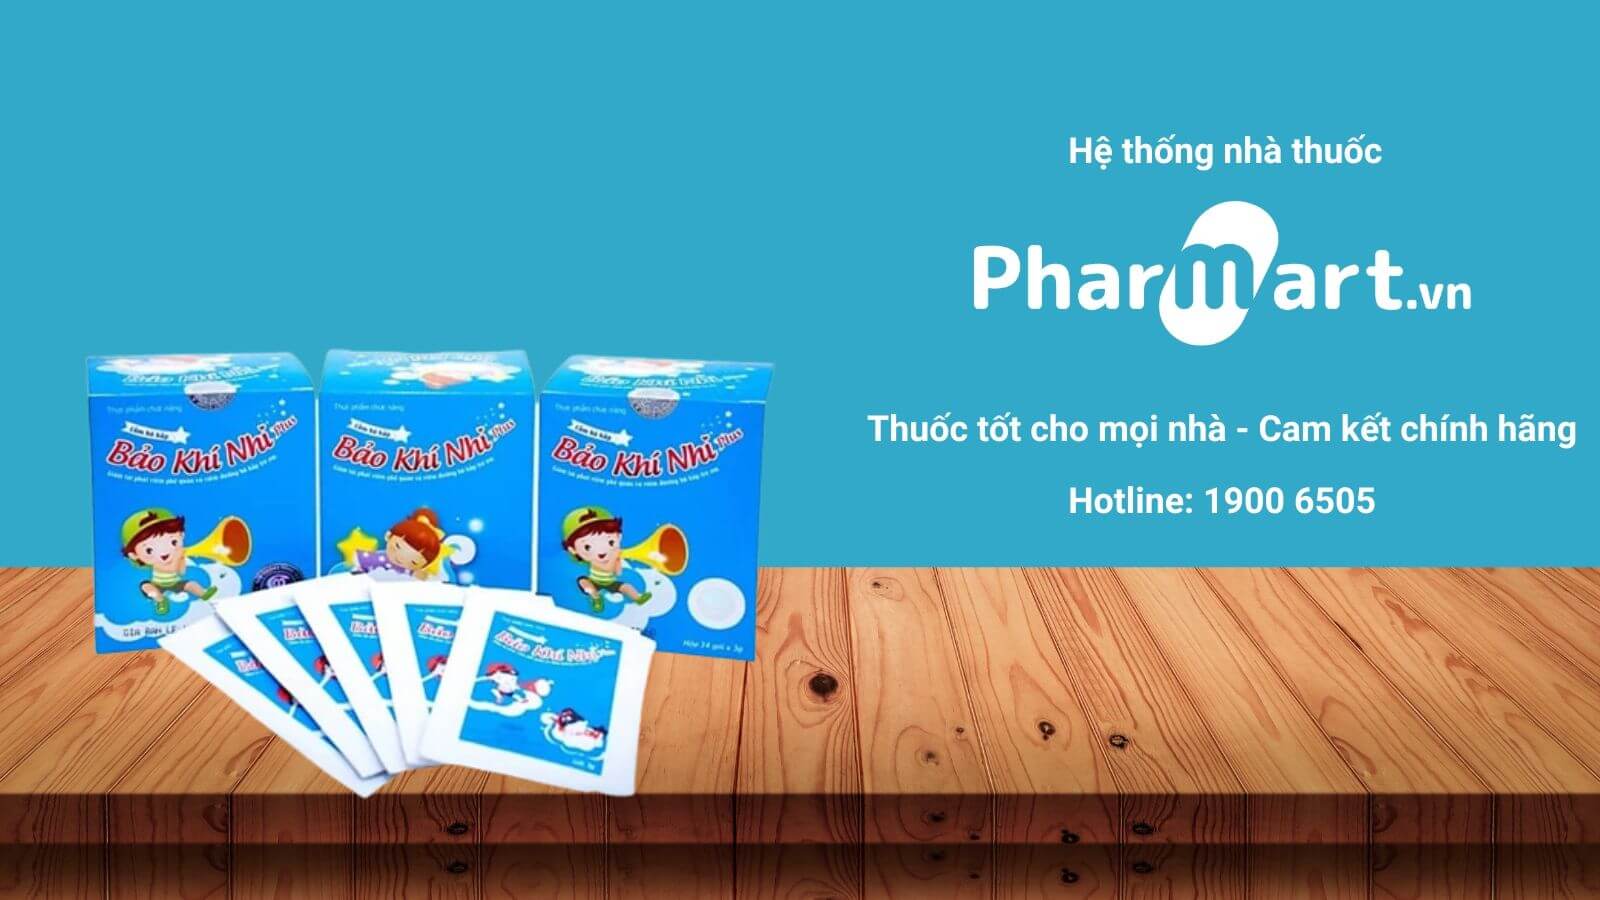 Liên hệ Pharmart.vn để đảm bảo mua Bảo Khí Nhi chính hãng